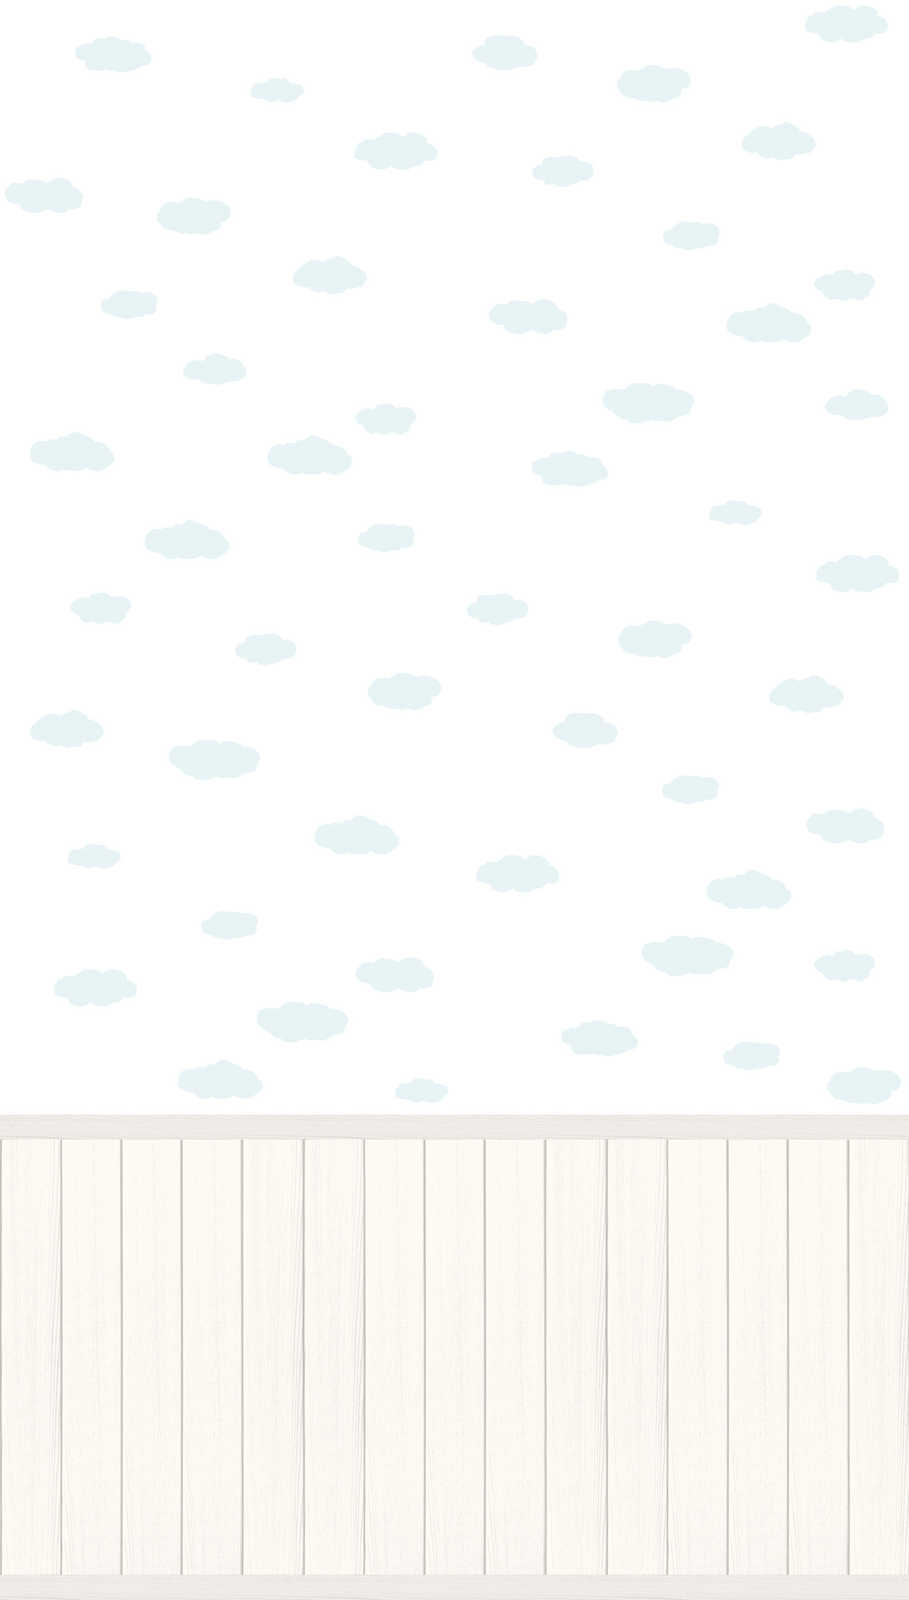             papier peint en papier intissé à motifs avec bordure de socle imitation bois et motif de nuages - blanc, bleu, gris
        